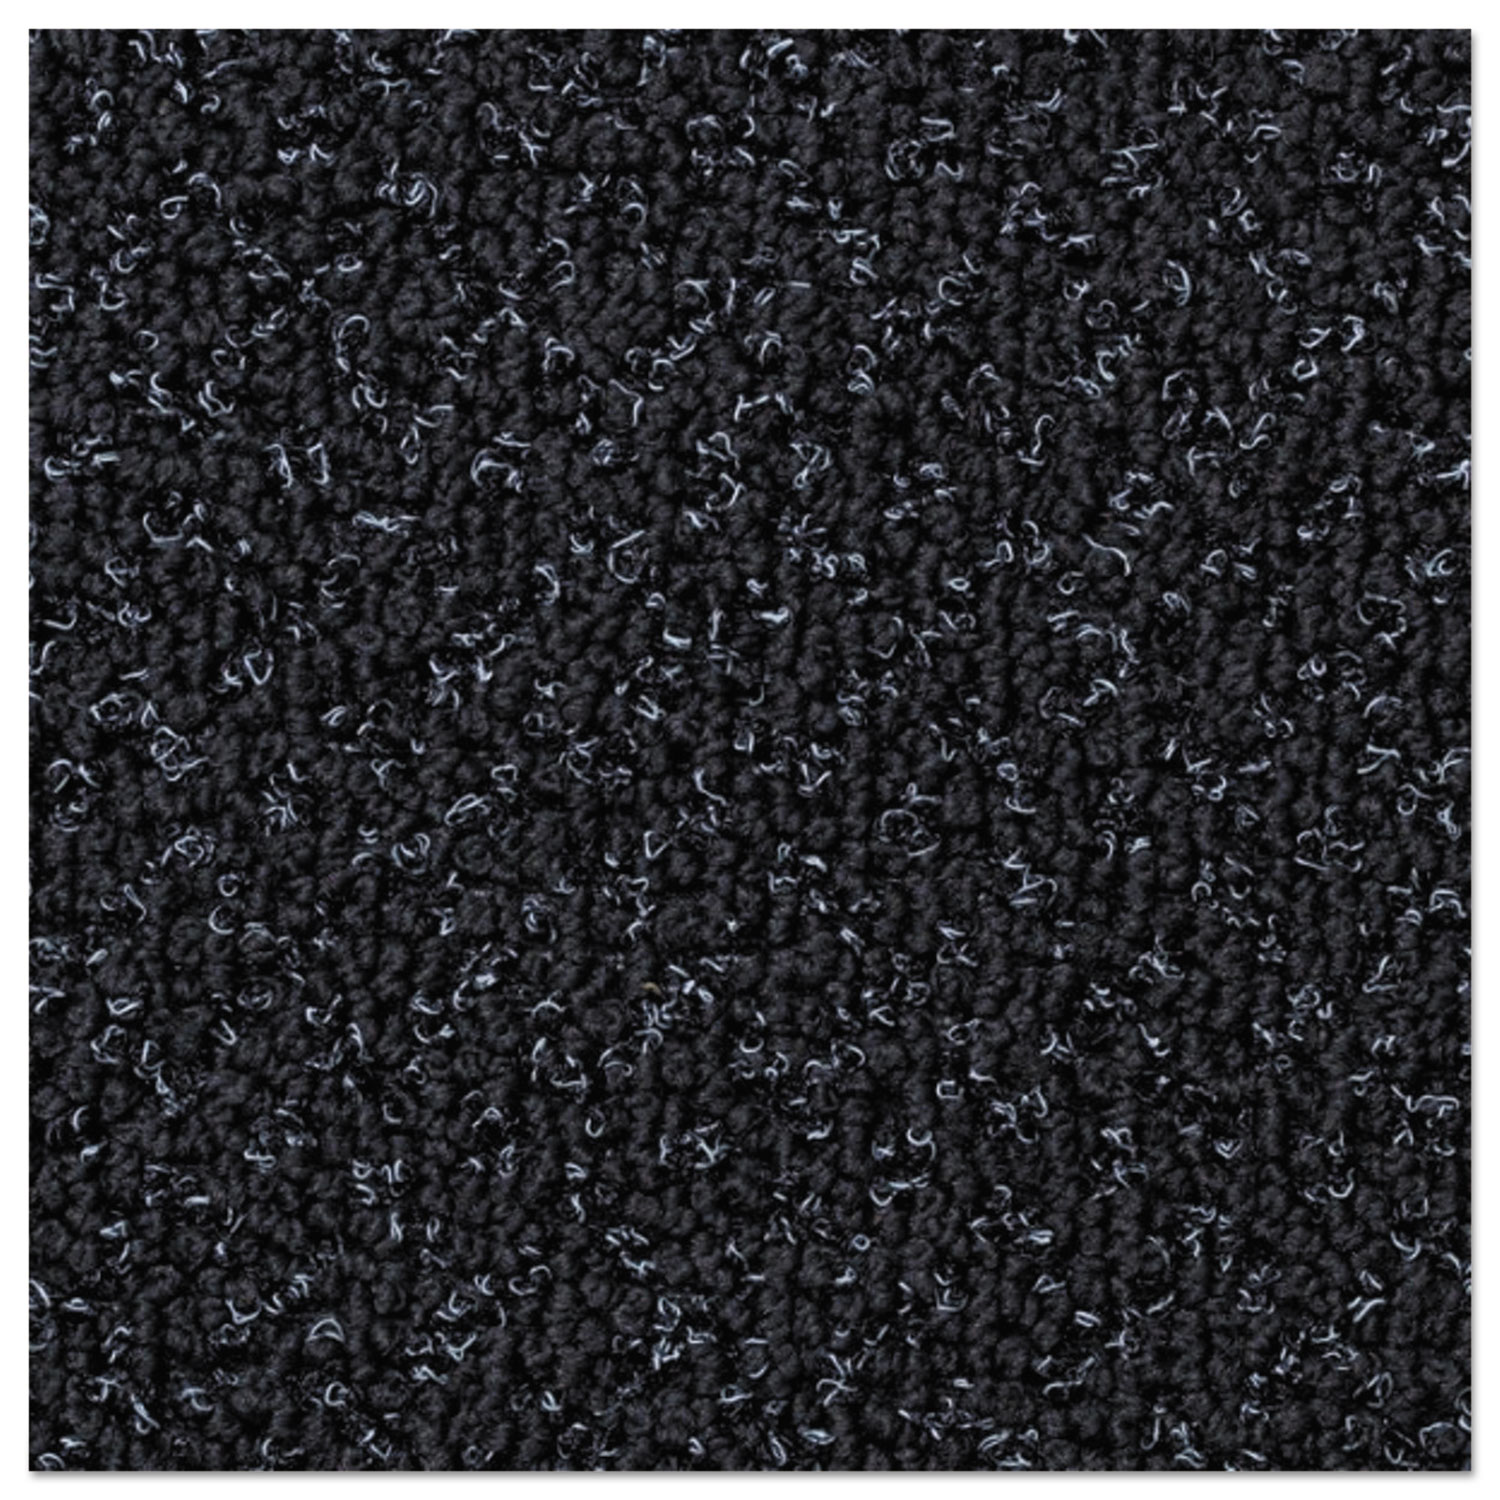 Nomad 8850 Heavy Traffic Carpet Matting, Nylon/Polypropylene, 72 x 120, Black